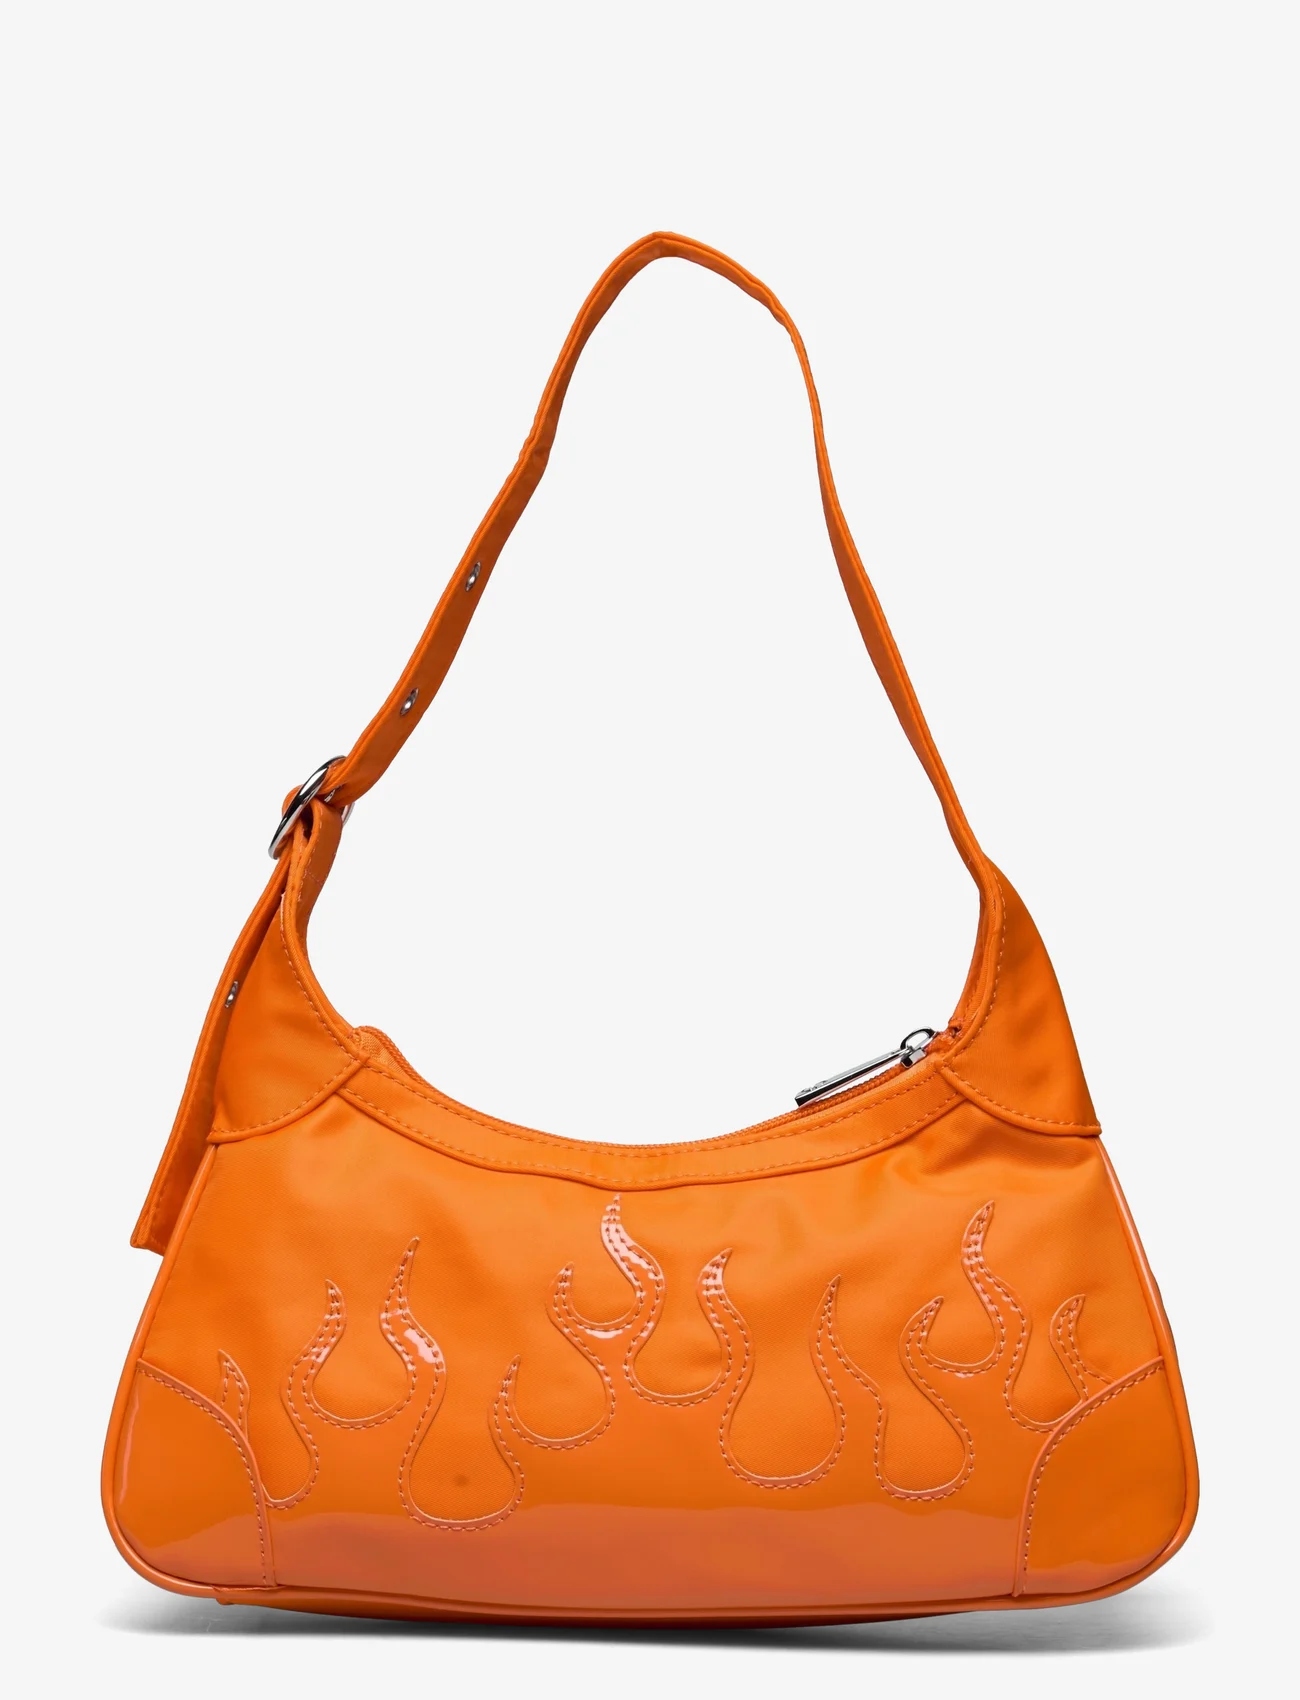 Silfen - Shoulder Bag Thora - Flame - damen - orange - 1